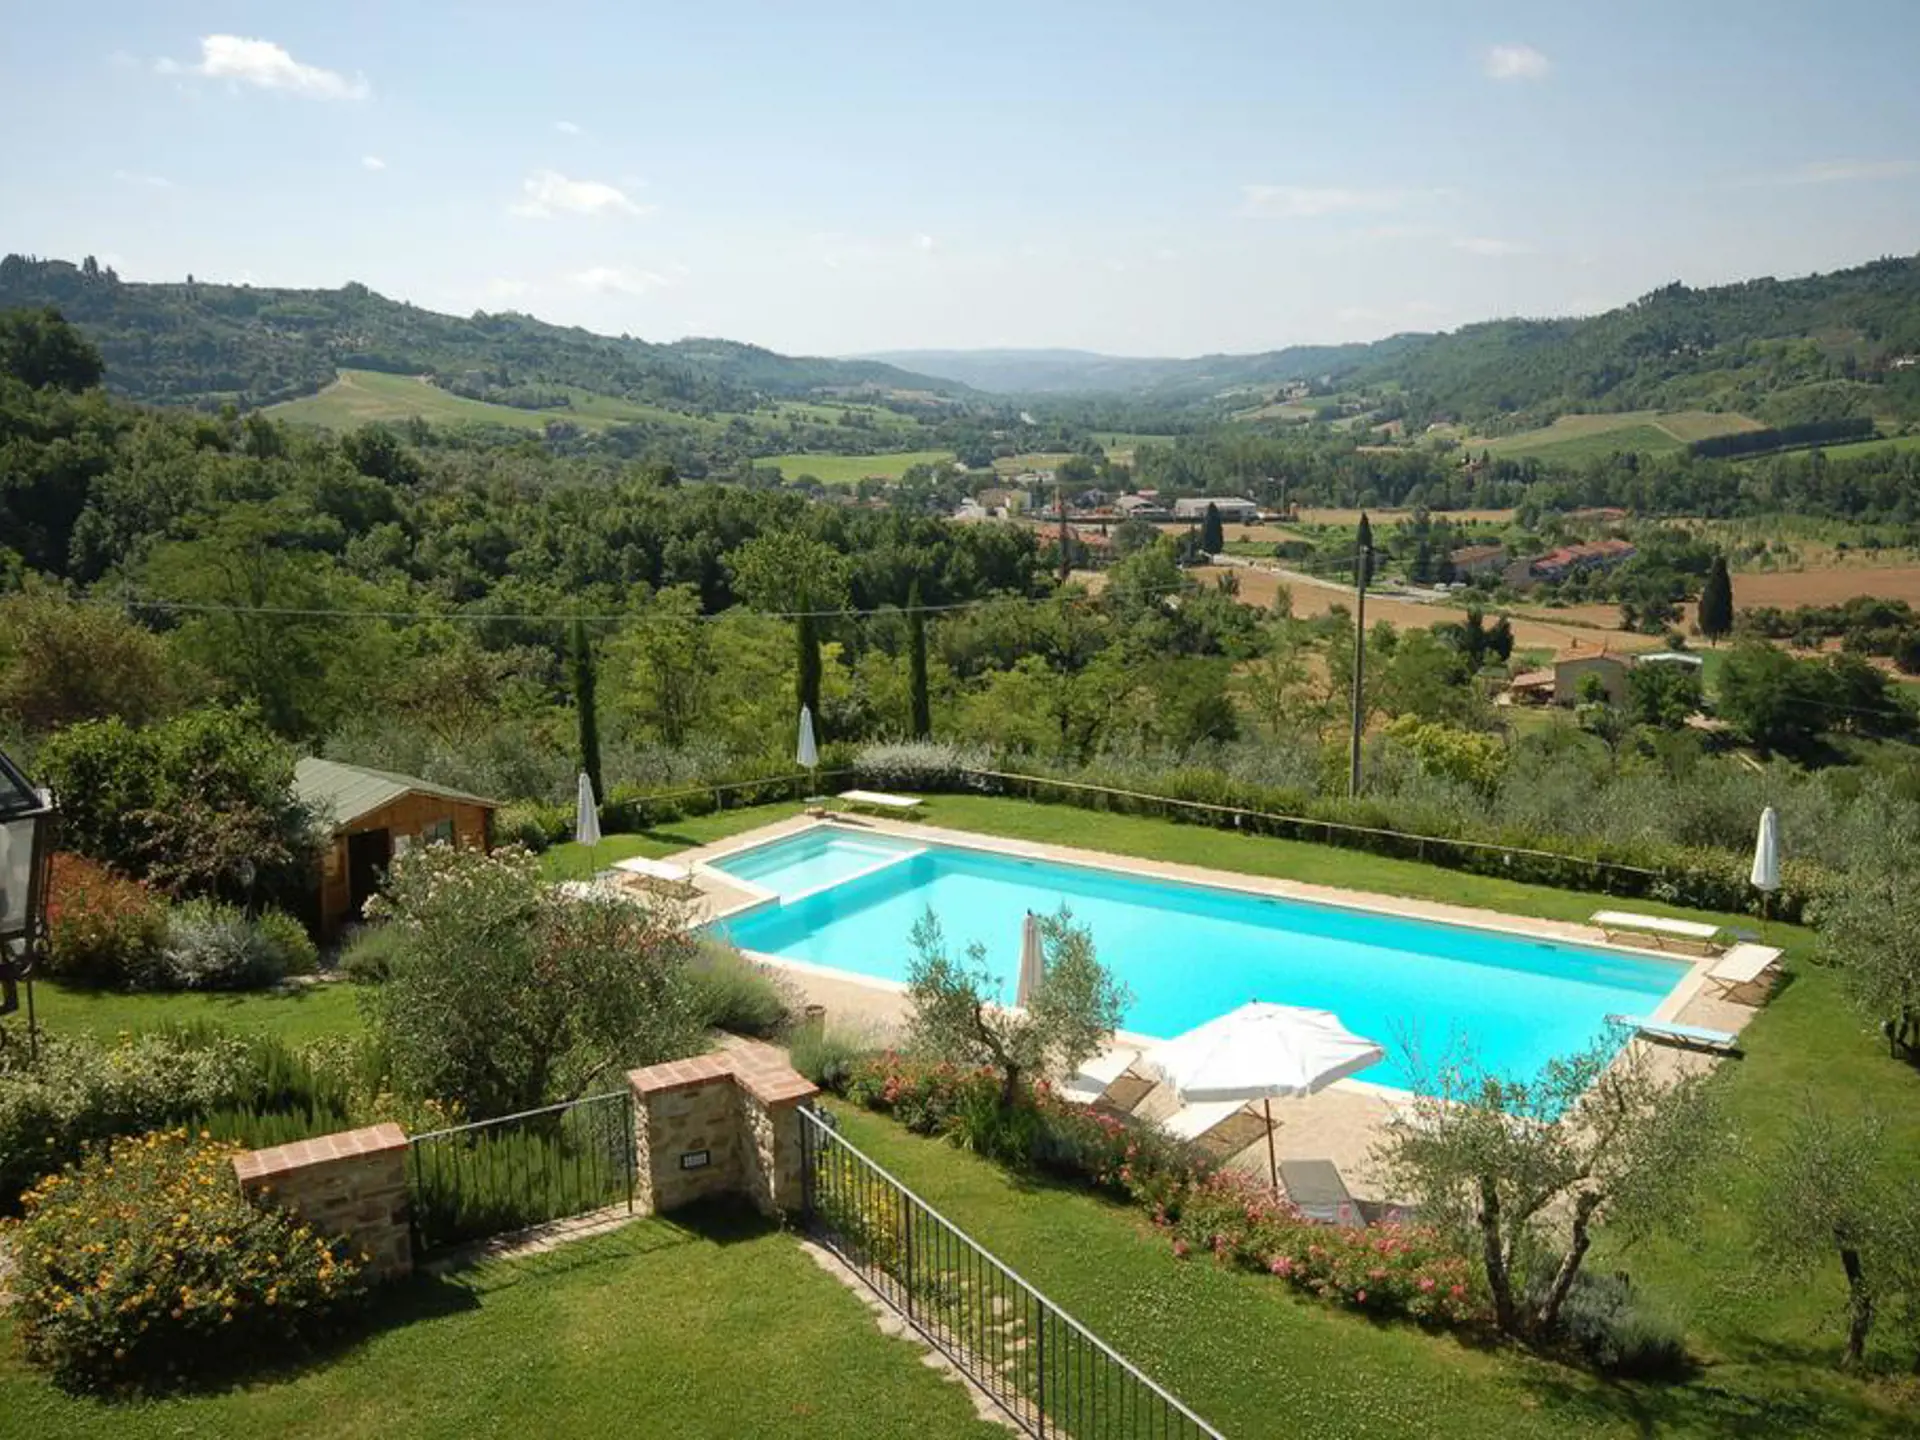 Jeres hotel i Toscana har den dejligste pool med udsigt.